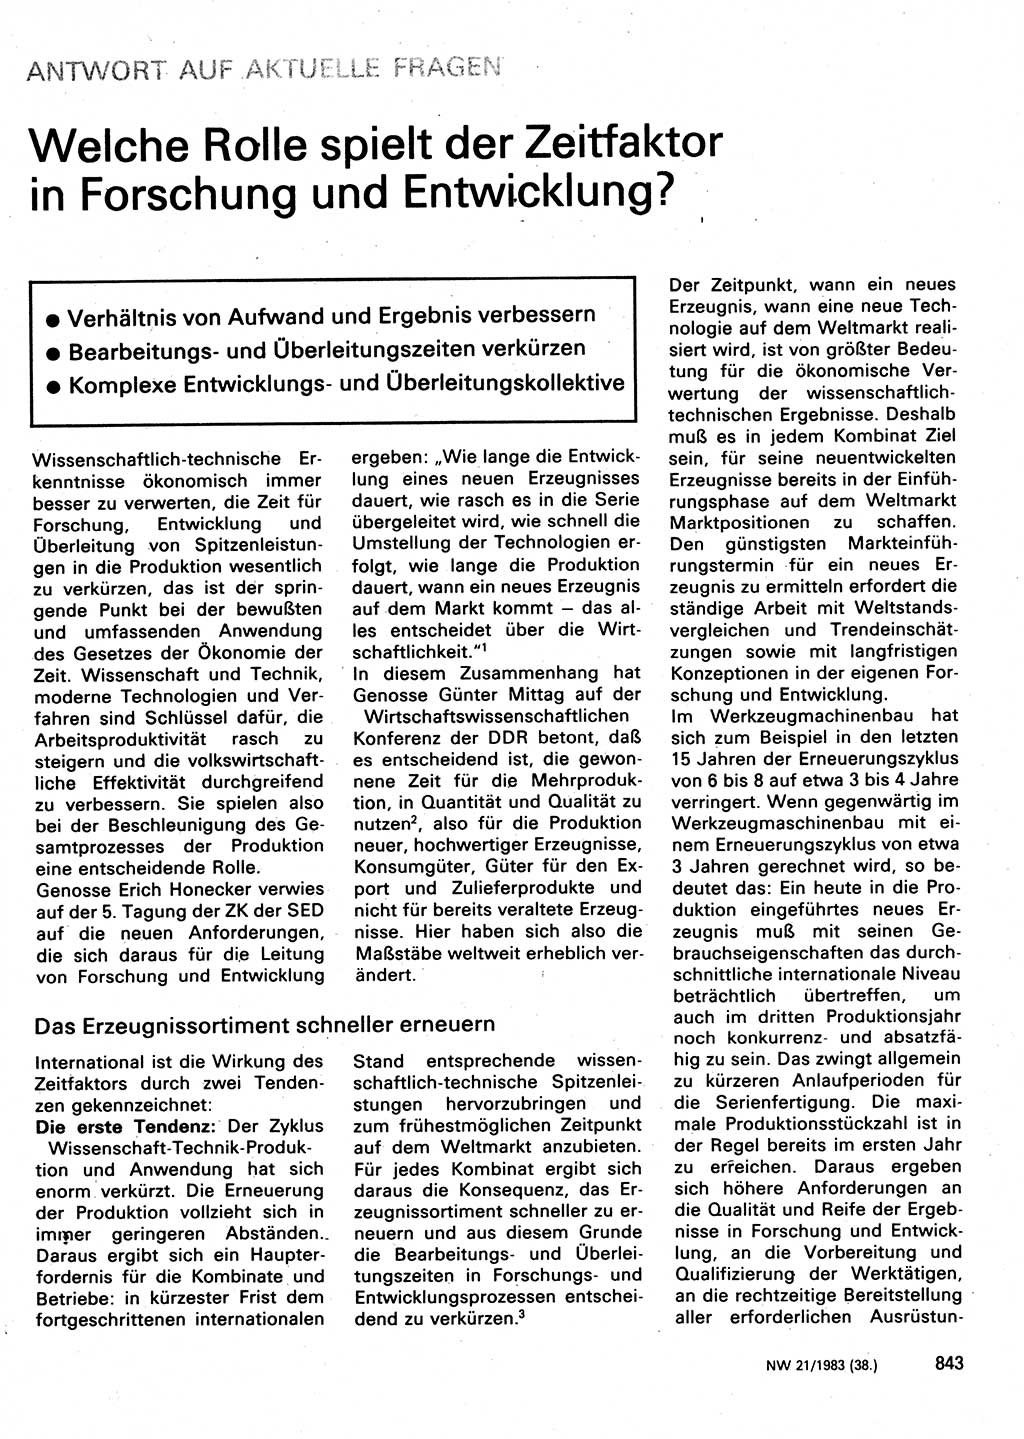 Neuer Weg (NW), Organ des Zentralkomitees (ZK) der SED (Sozialistische Einheitspartei Deutschlands) für Fragen des Parteilebens, 38. Jahrgang [Deutsche Demokratische Republik (DDR)] 1983, Seite 843 (NW ZK SED DDR 1983, S. 843)